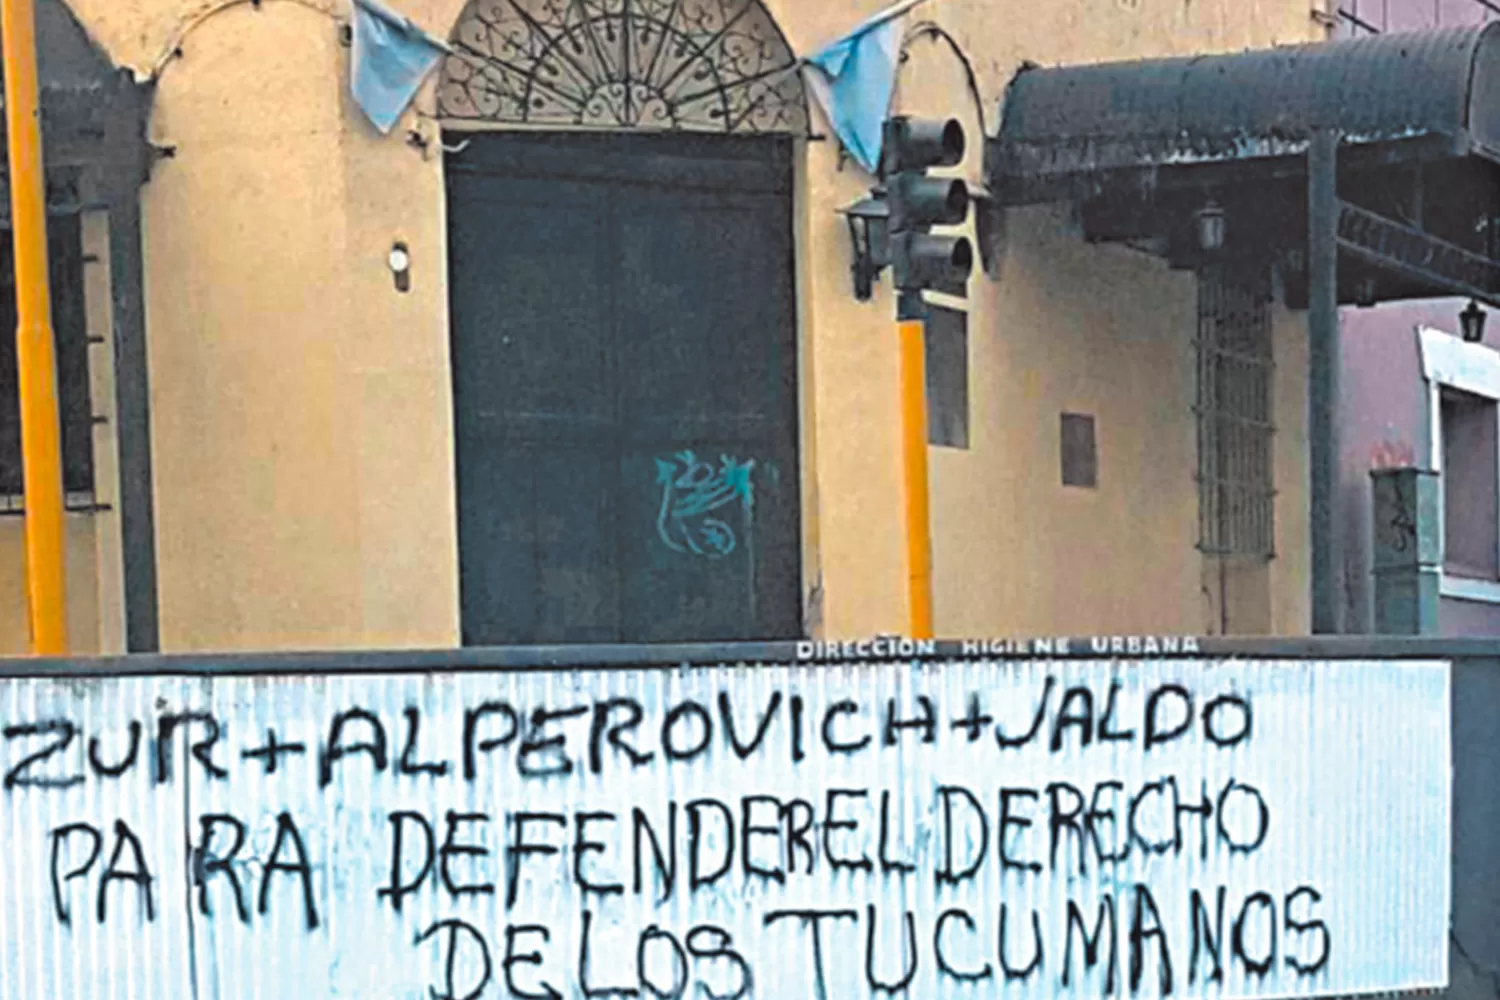 Un graffiti desató el enojo del municipio: si la política practica vandalismo ya nada se puede esperar.